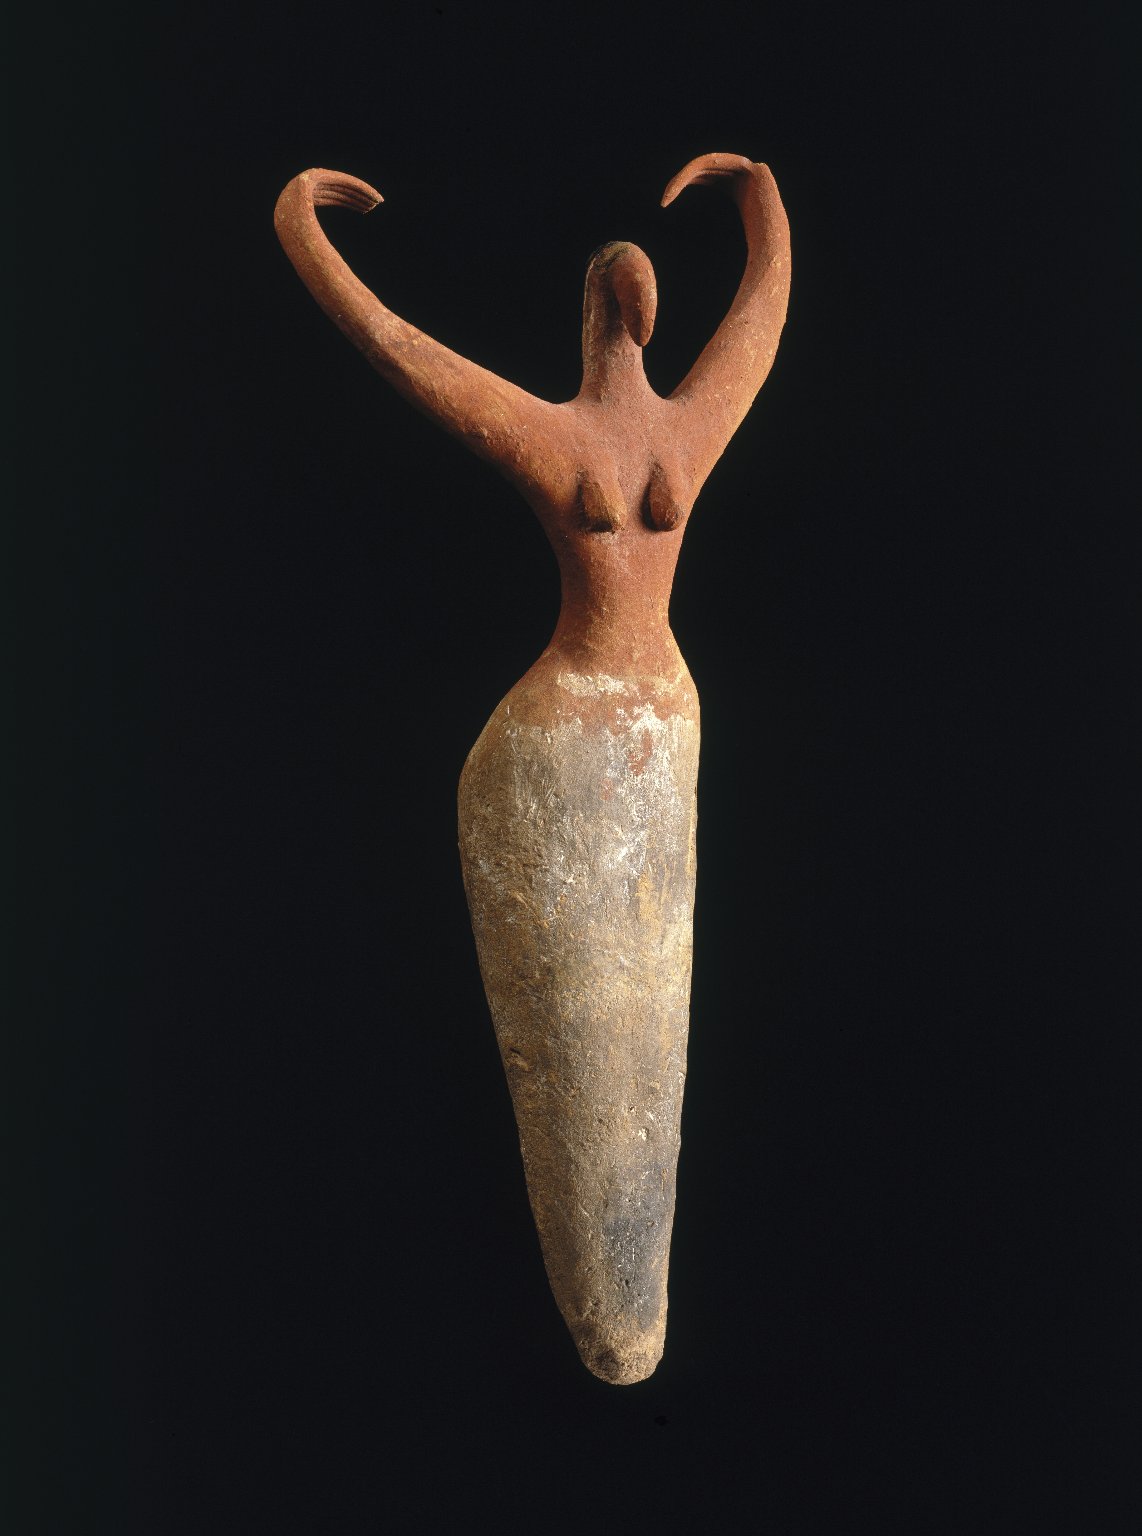 Female Figure by Unknown Artist - ca. 3500-3400 B.C.E - 29.2 x 14 x 5.7 cm Brooklyn Museum